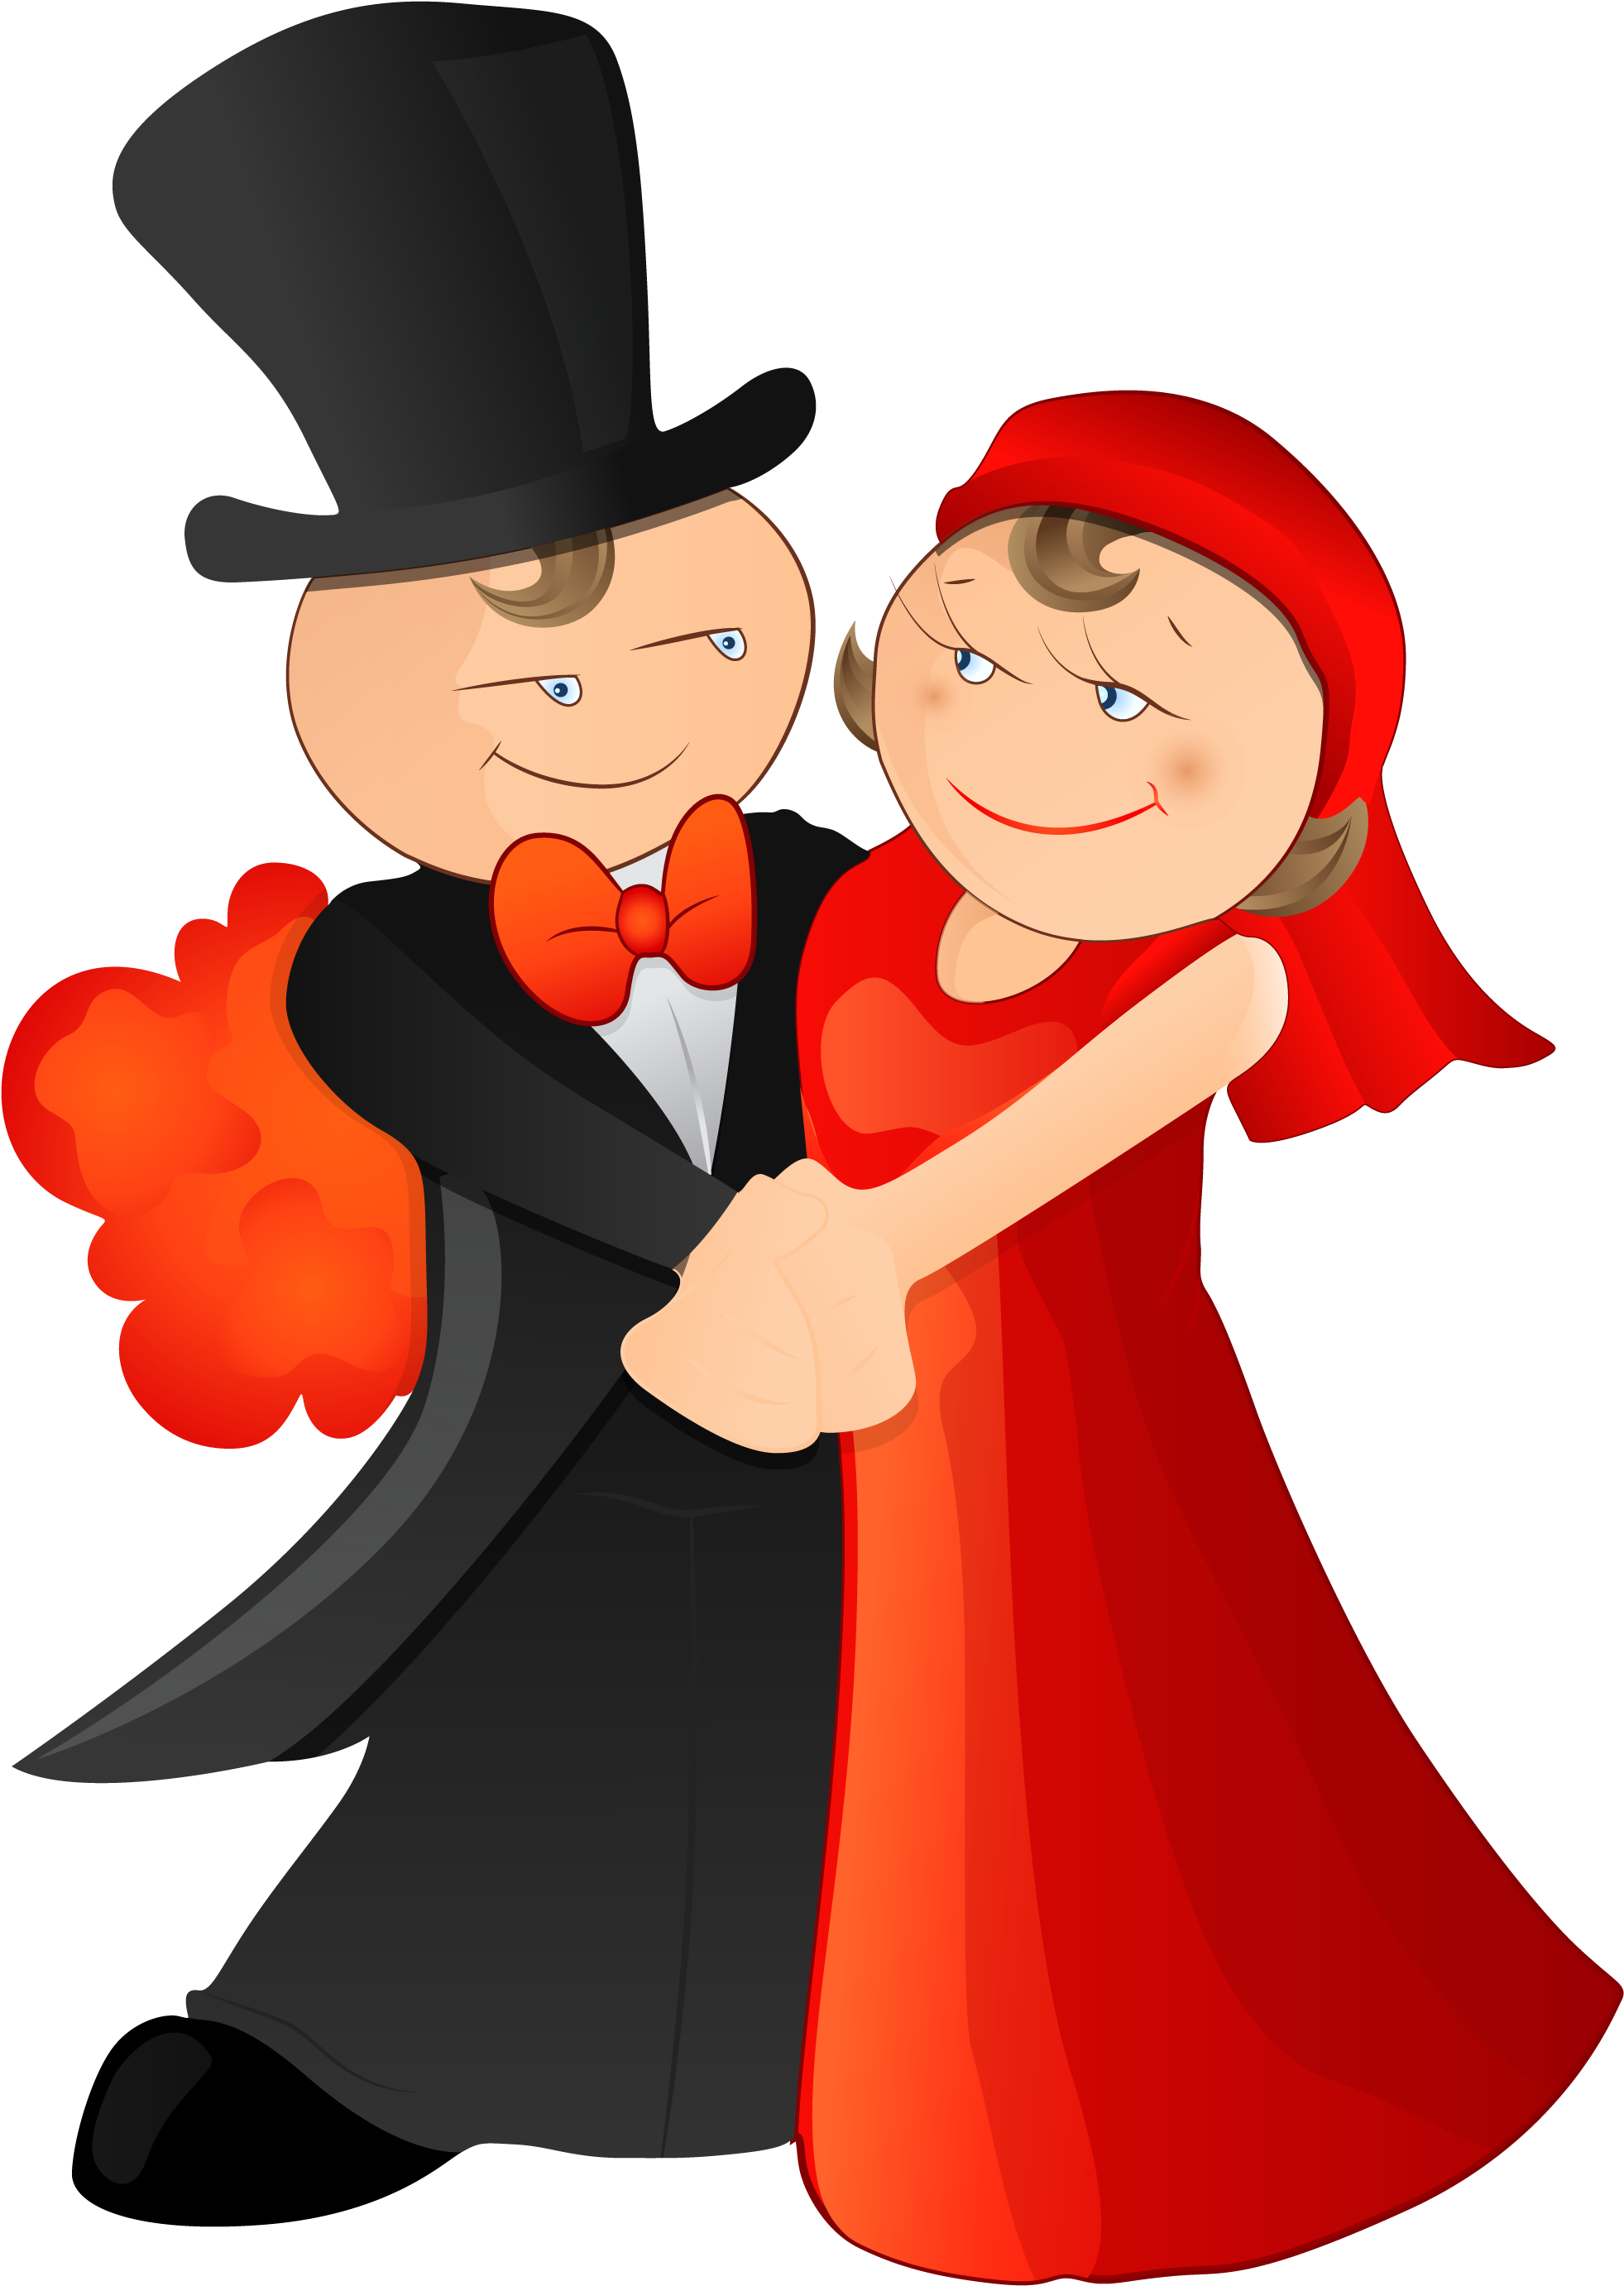 Cartoon Marriage Illustration - Bridegroom (3219x2762)